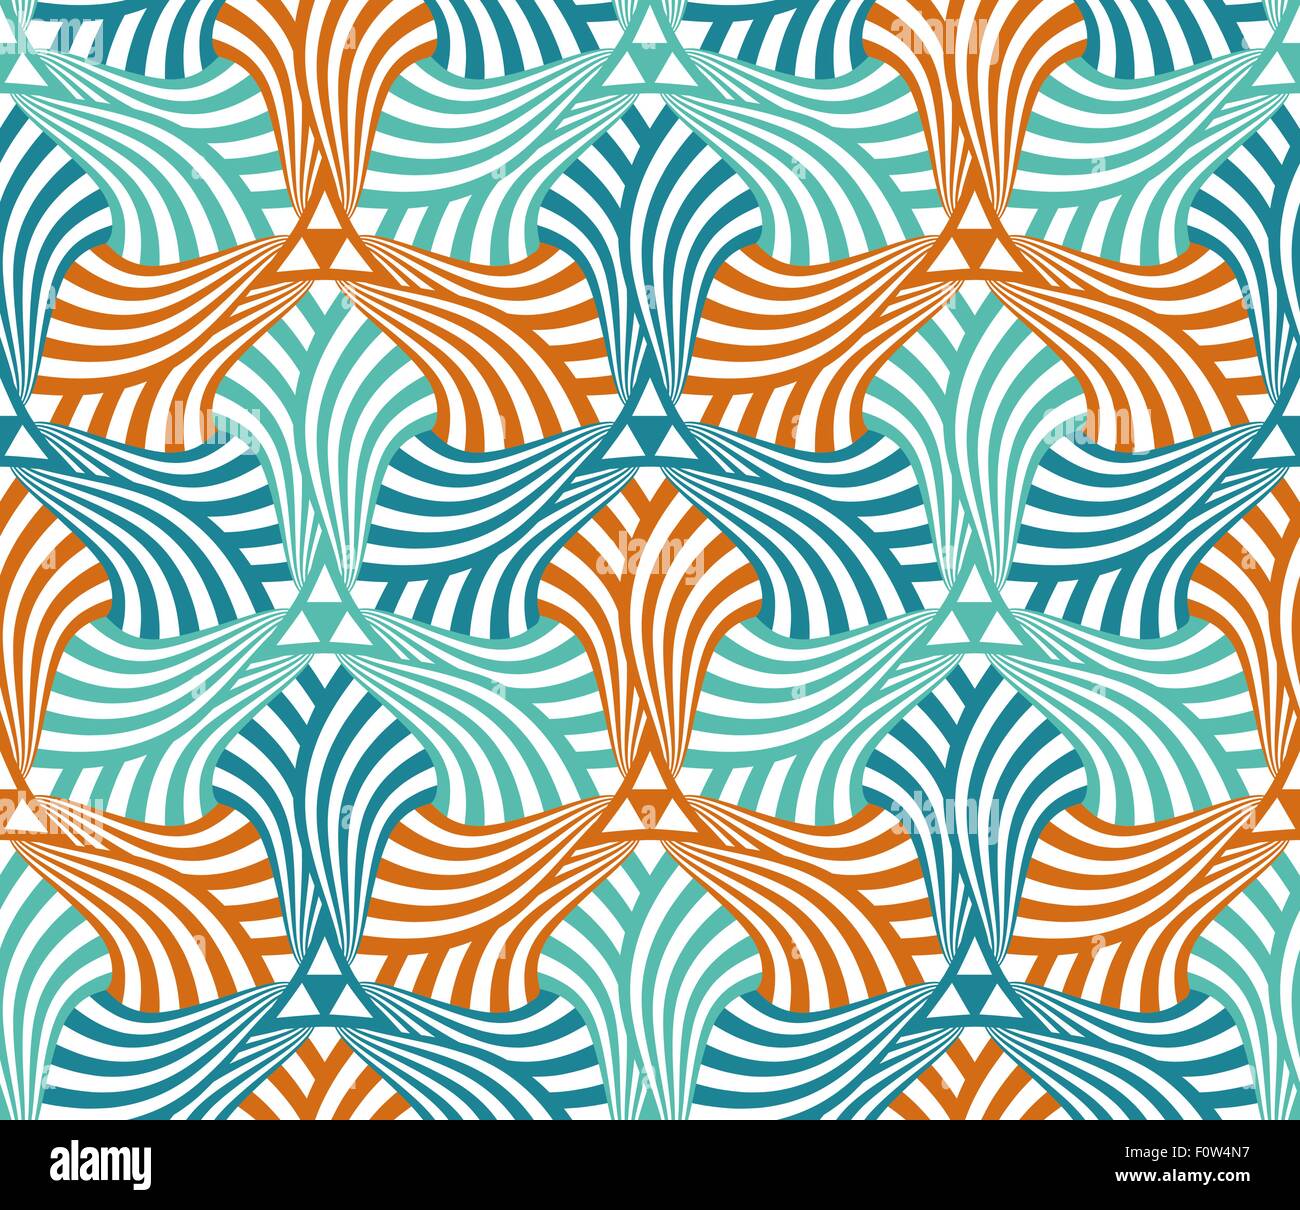 Geometrische abstrakte Musterdesign Motiv Hintergrund. Bunte sechseckige Formen Zusammensetzung Stock Vektor